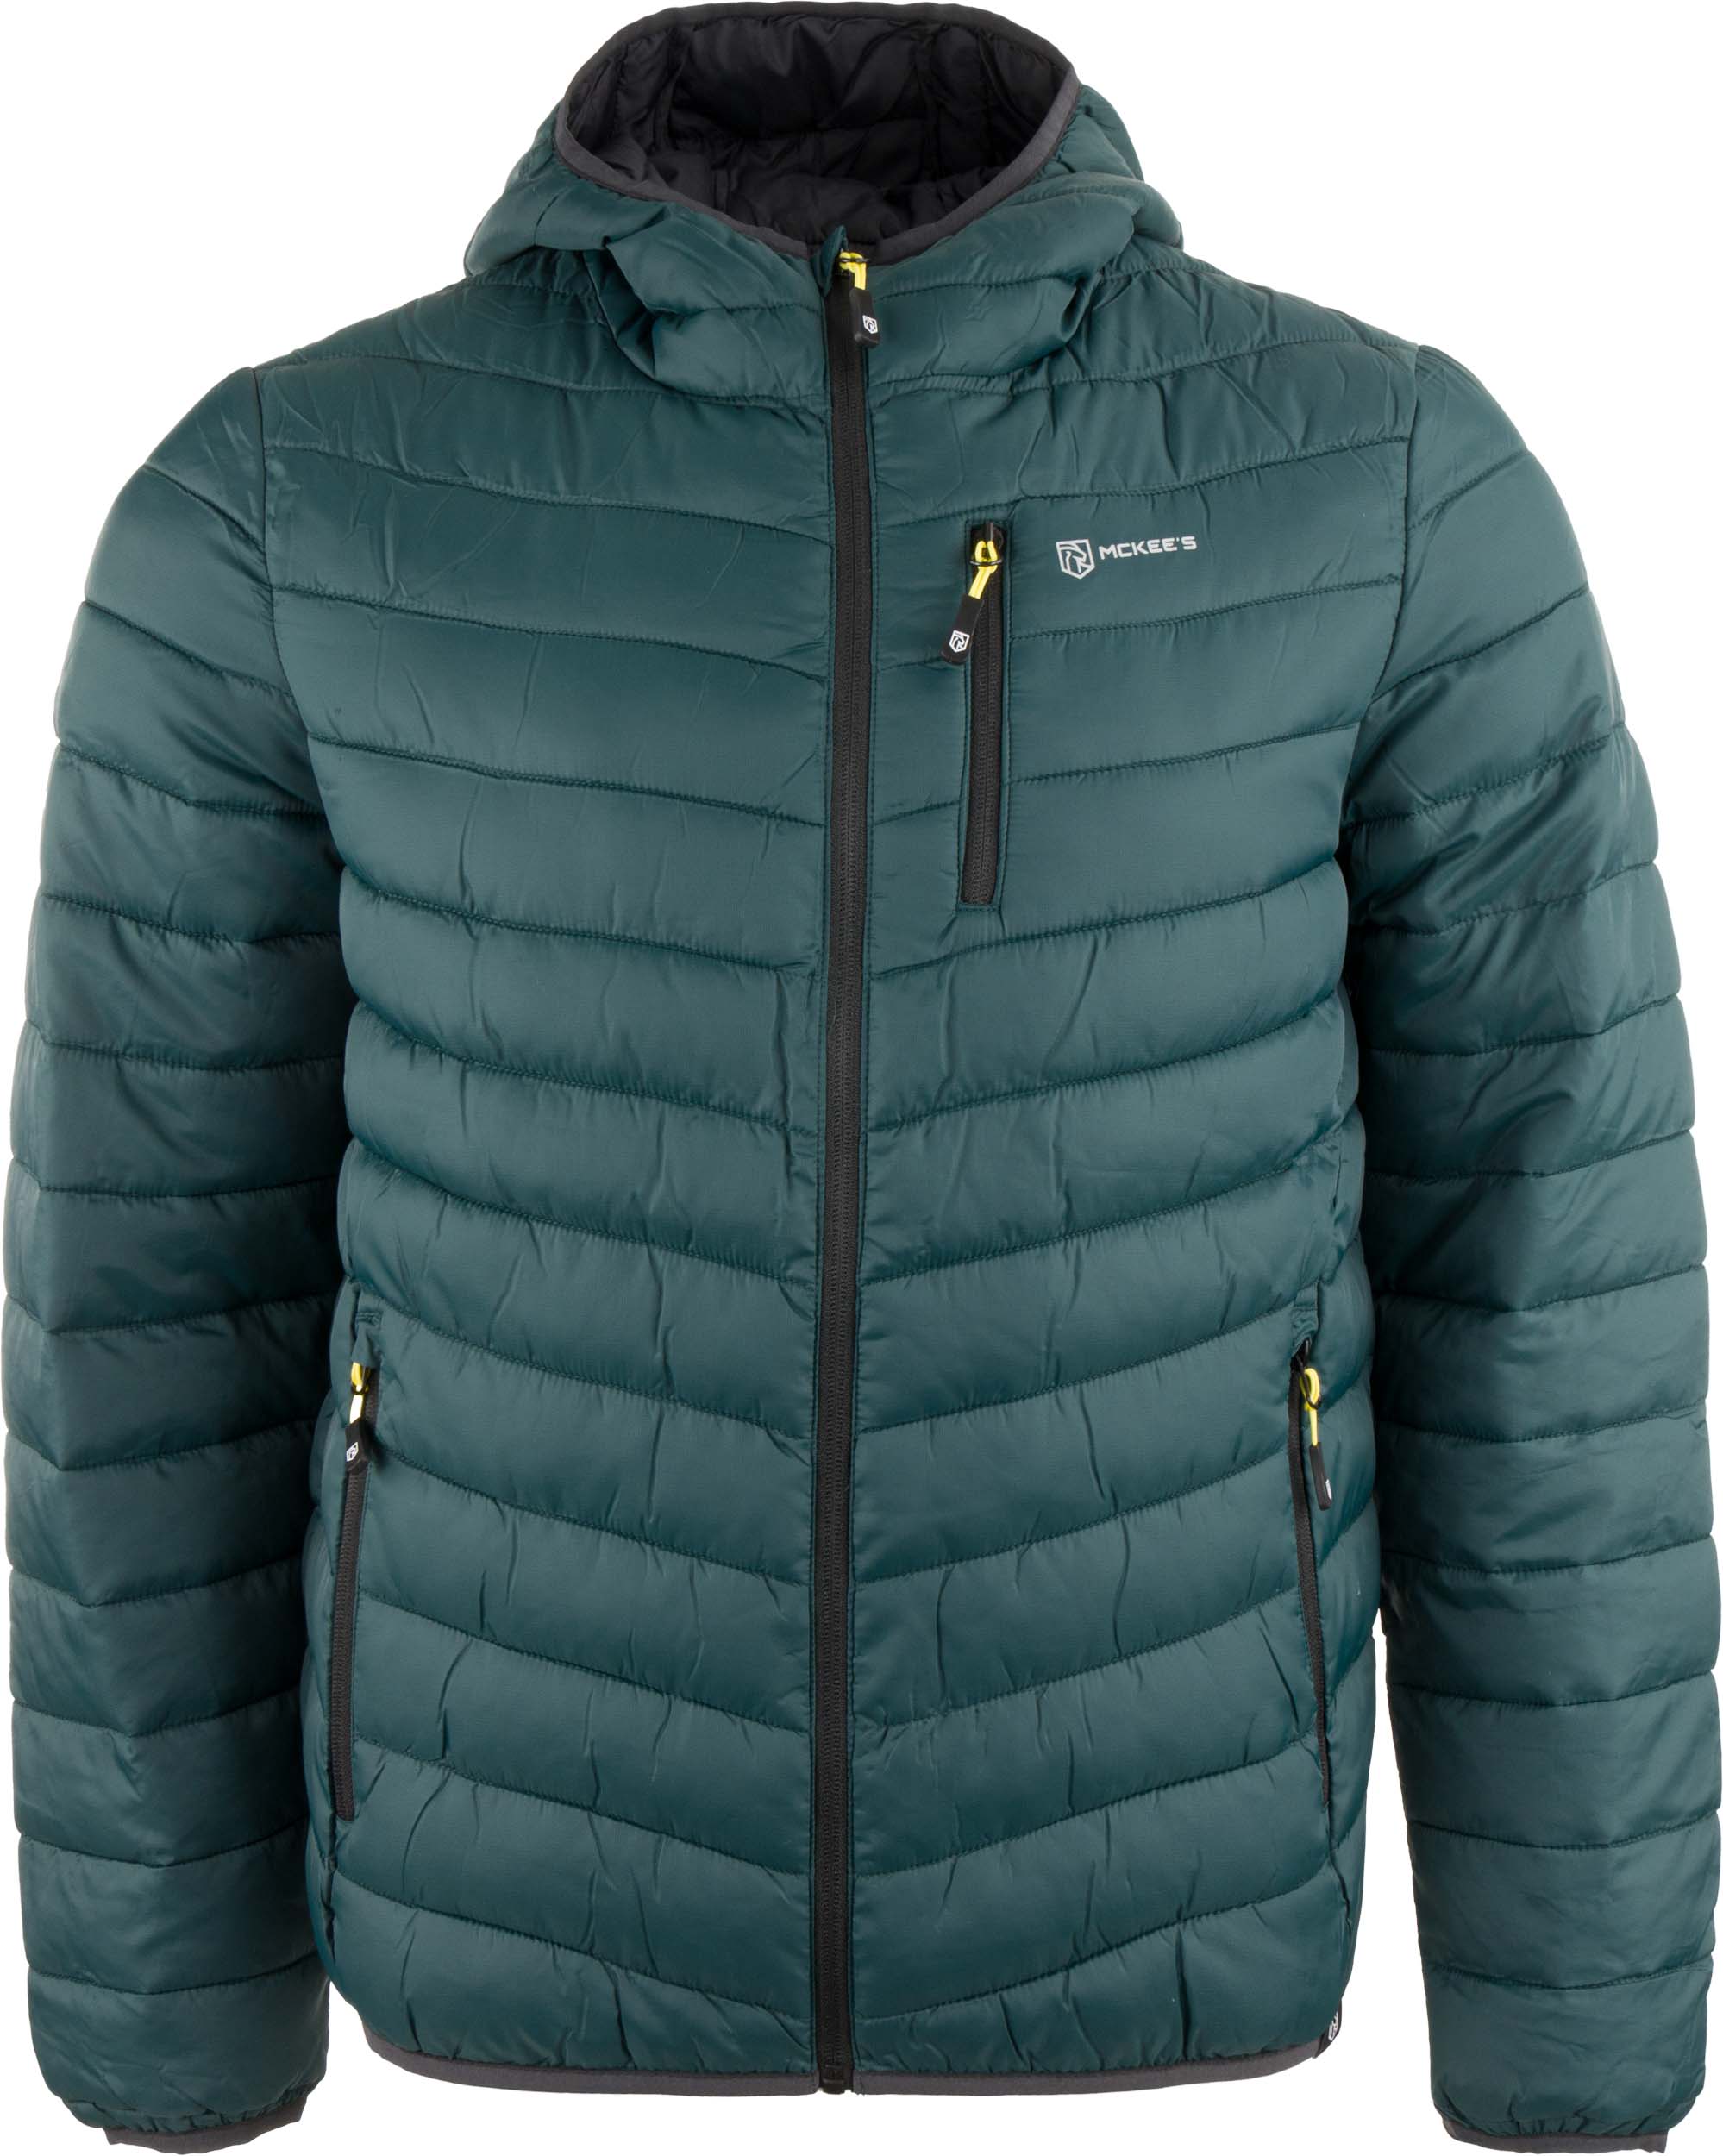 Pánská zimní bunda Mckees Fiordi Dark Green|50-L